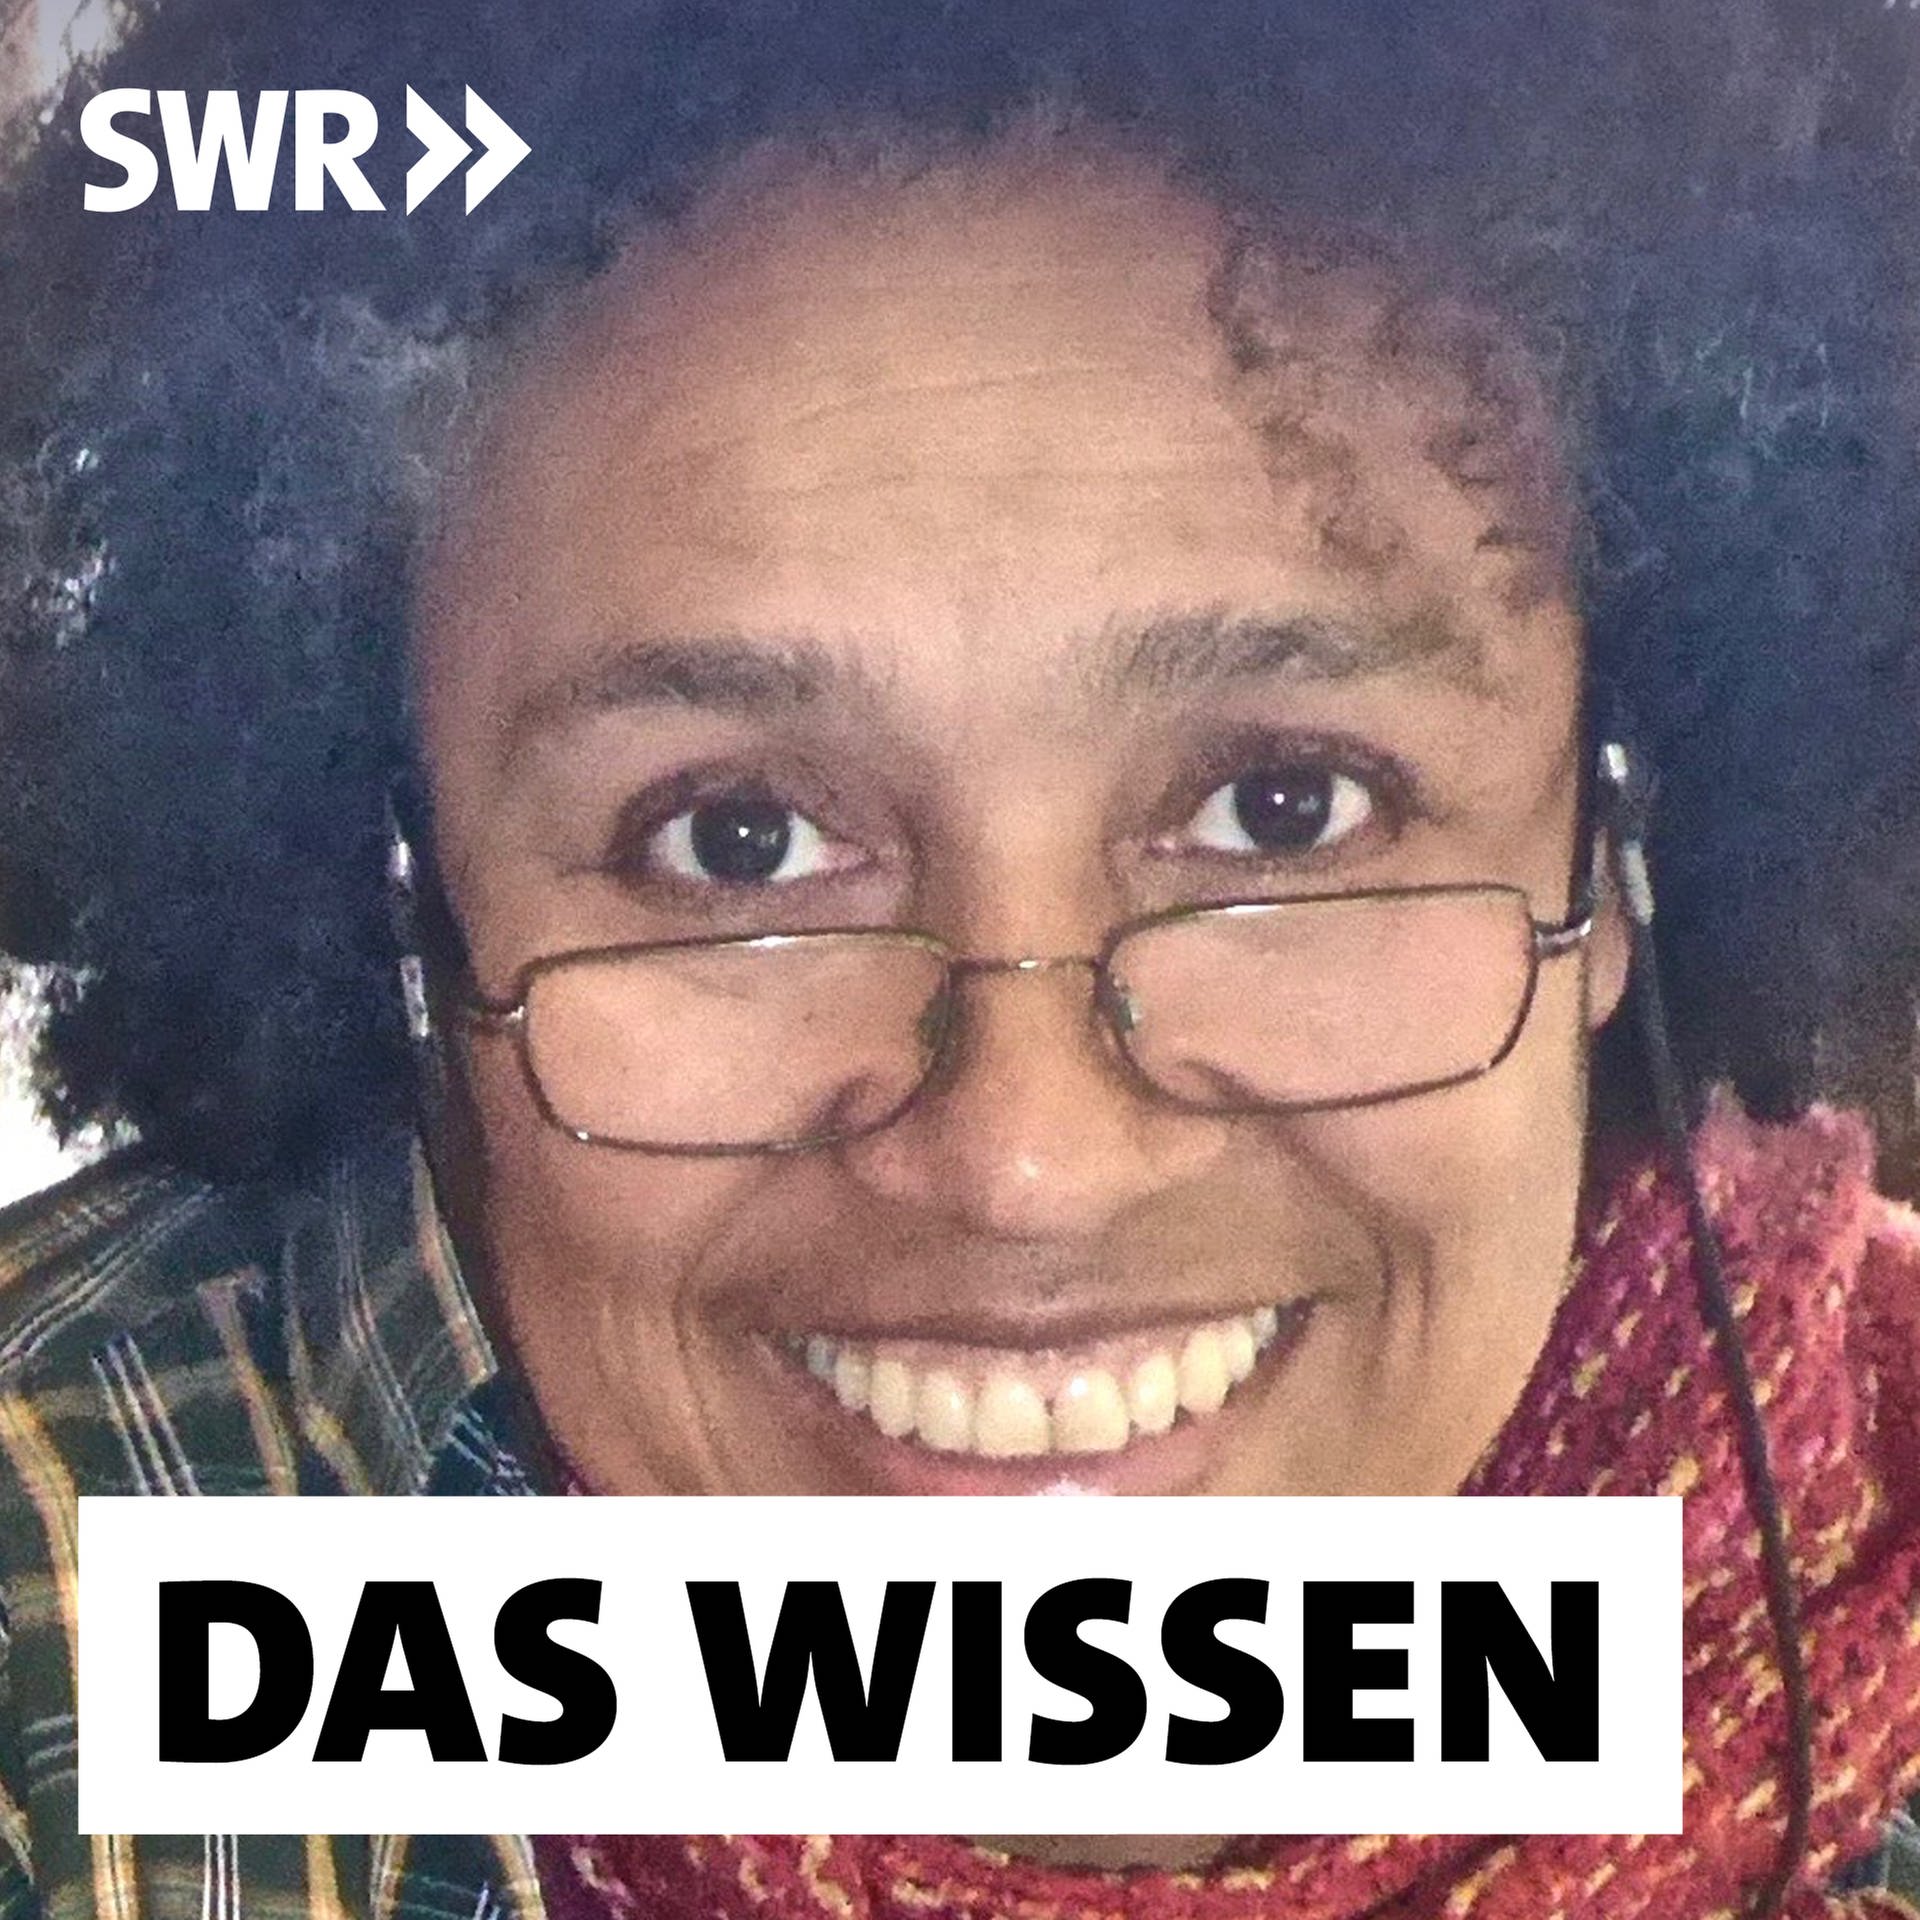 Die afrodeutsche Bewegung – Schwarz, weiblich, selbstbewusst